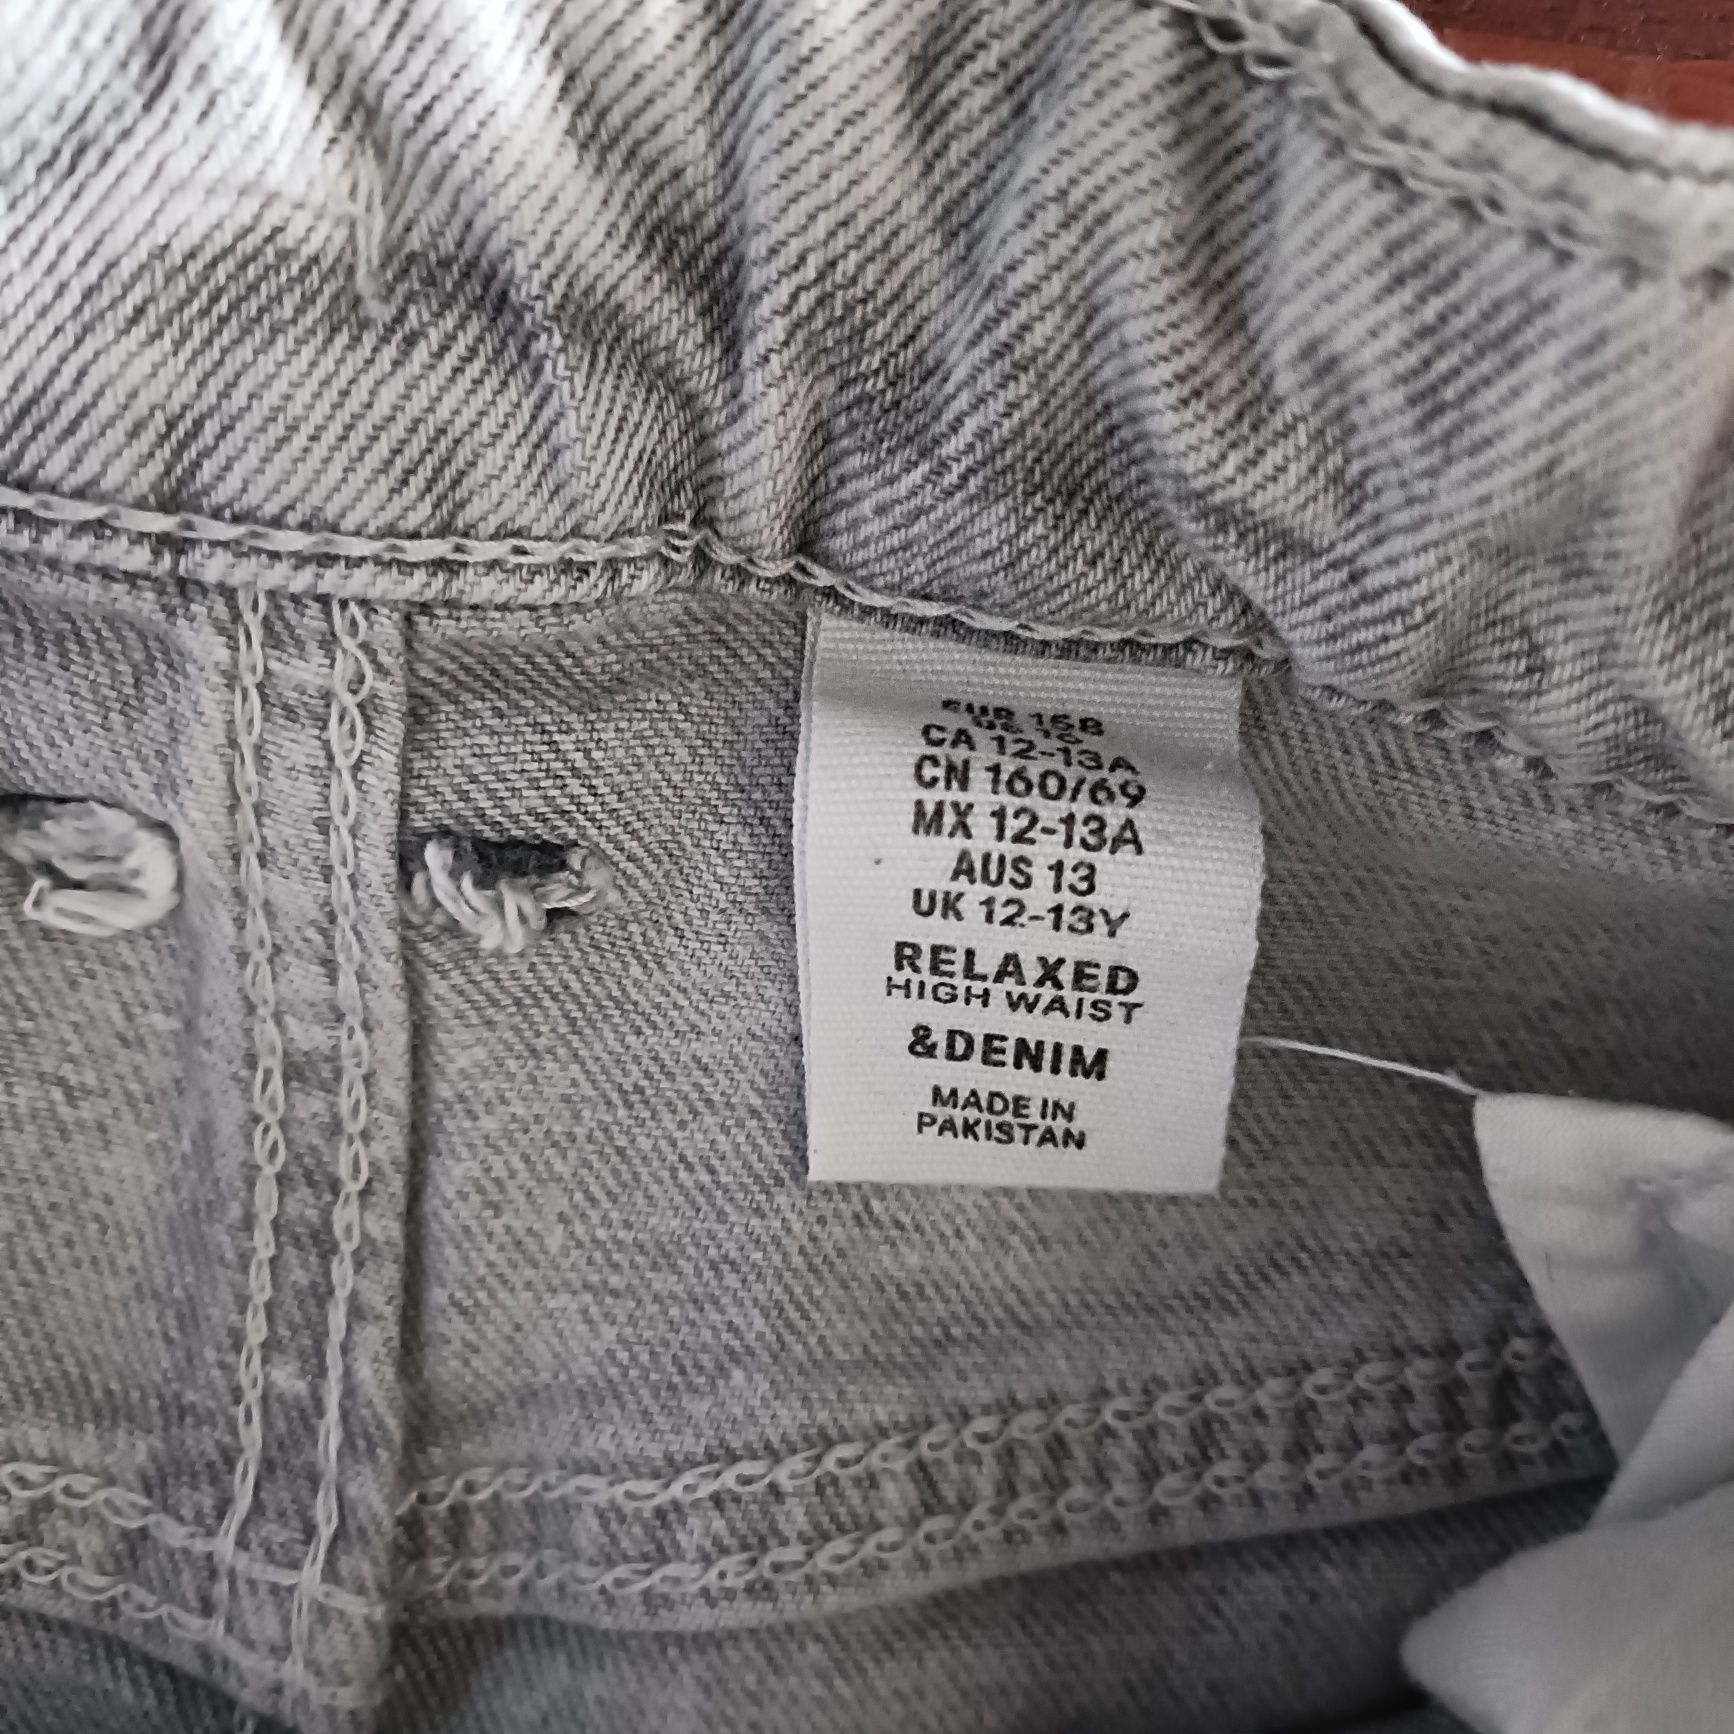 Spodnie jeansowe firmy H&M roz  158